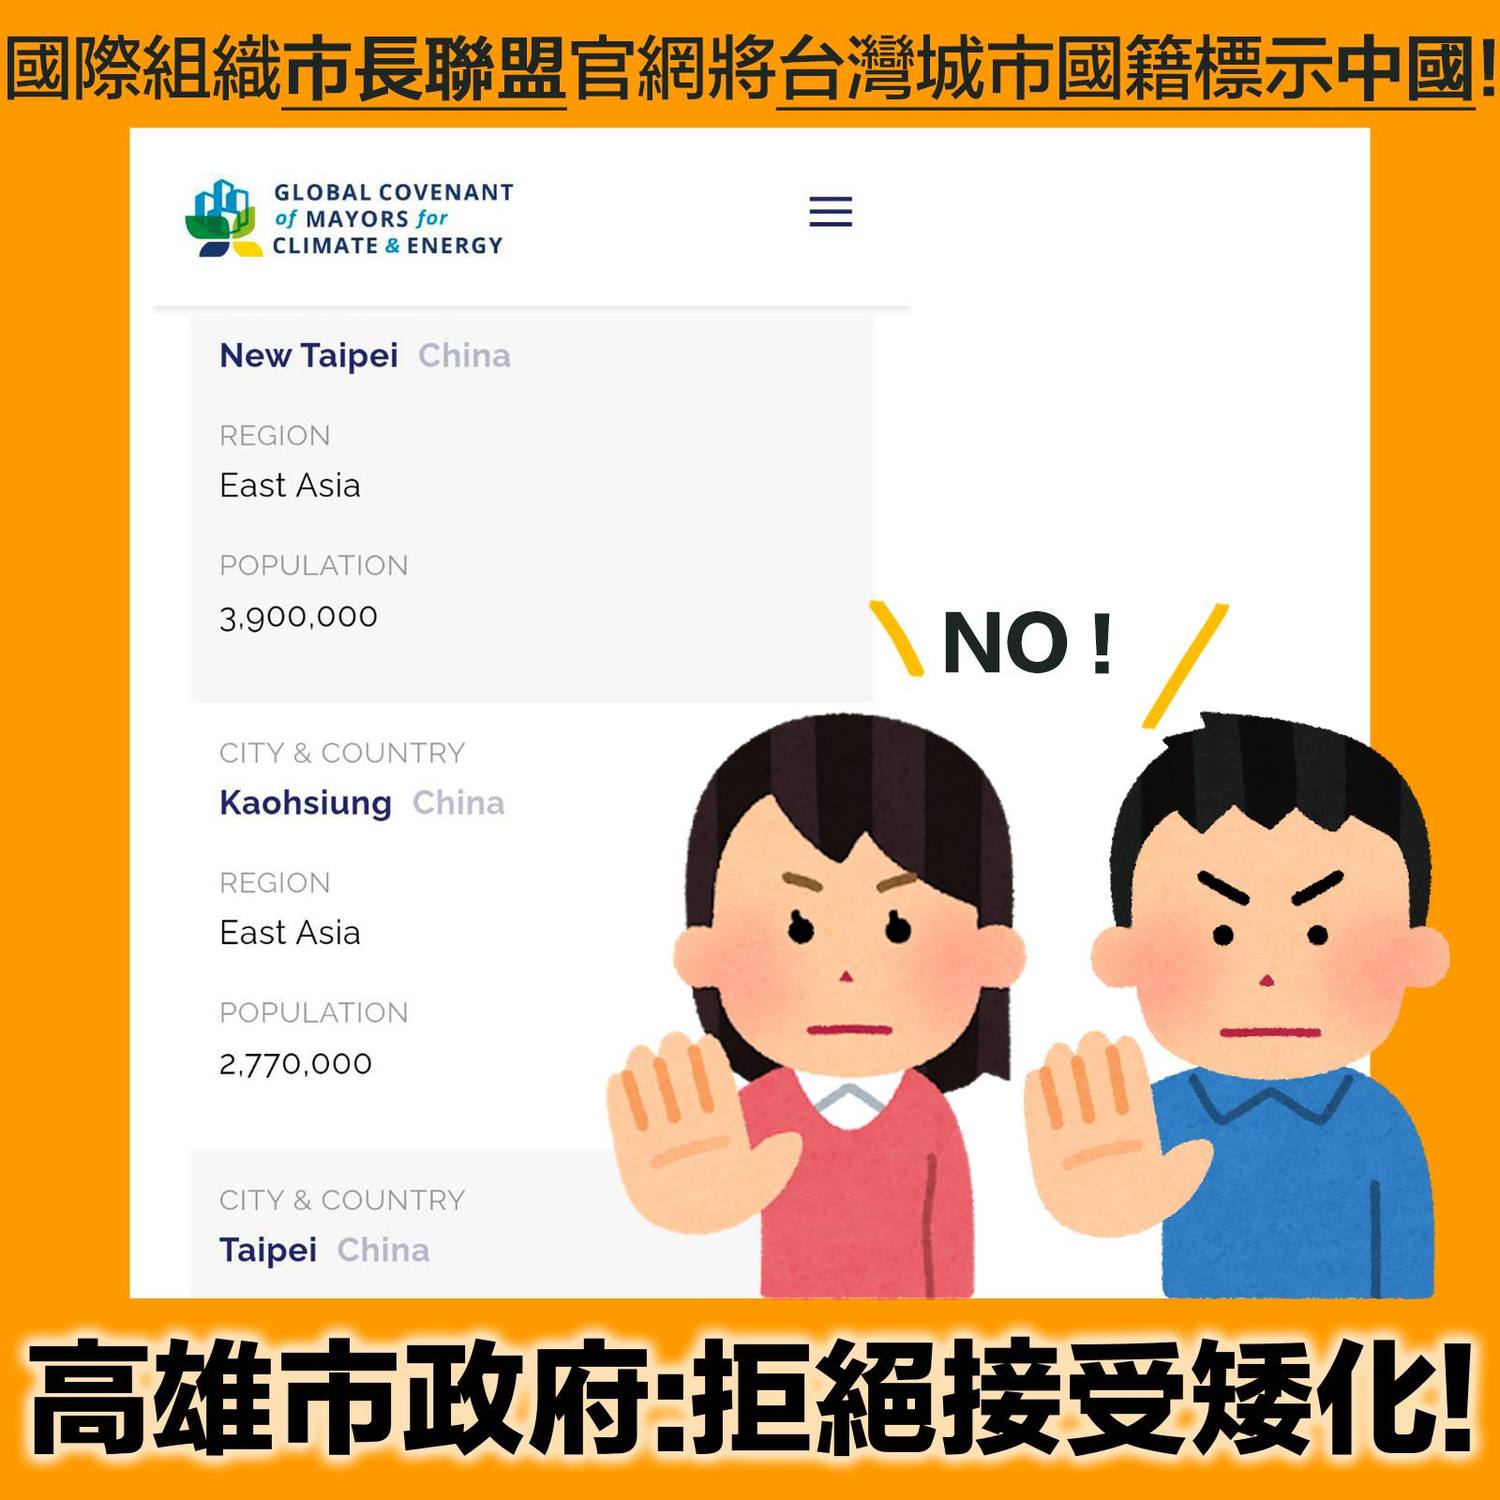 「市長聯盟」將台灣6都標示為中國籍 陳其邁:嚴正抗議要求正名